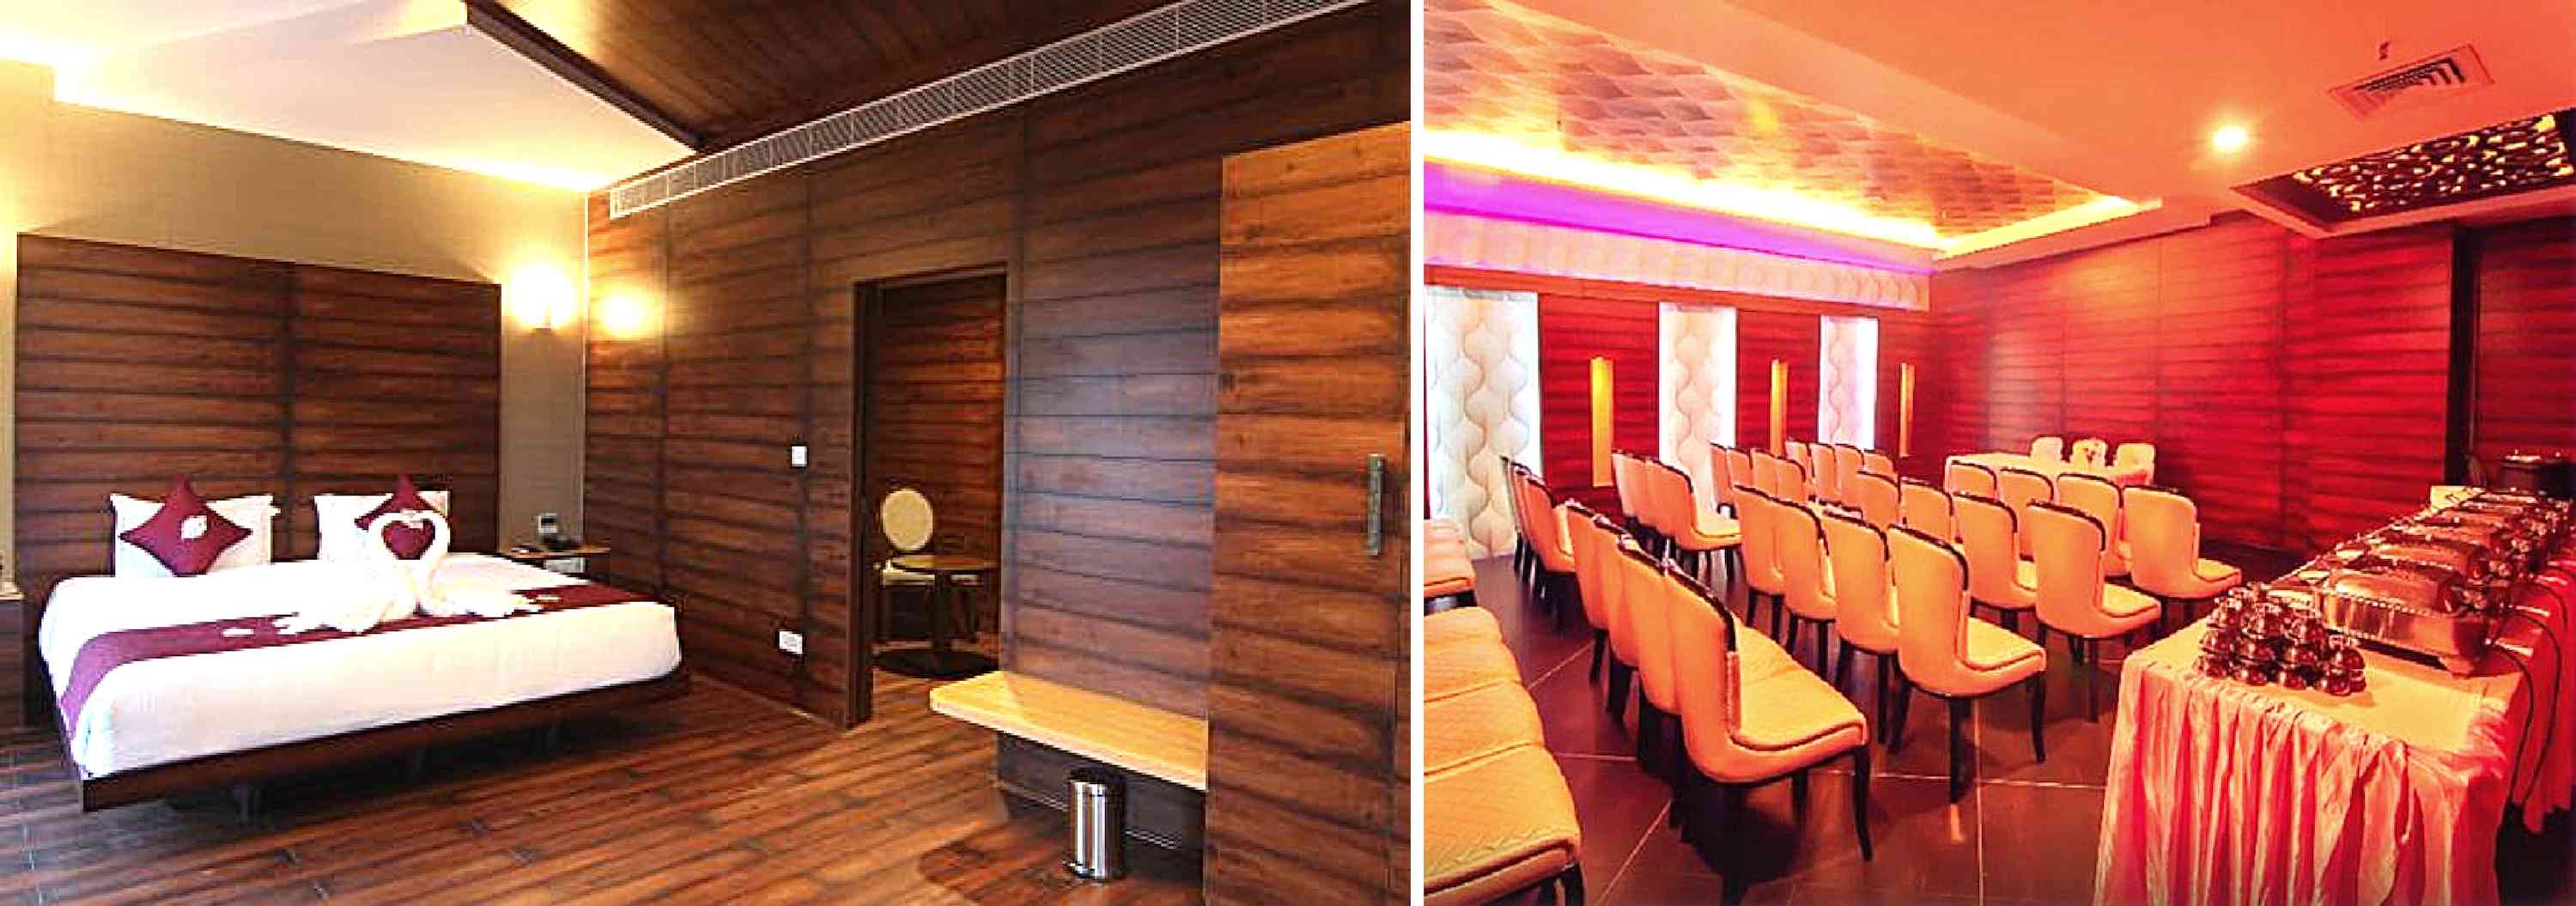 Wooden flooring tamil nadu, S P K Hotel, wooden flooring  